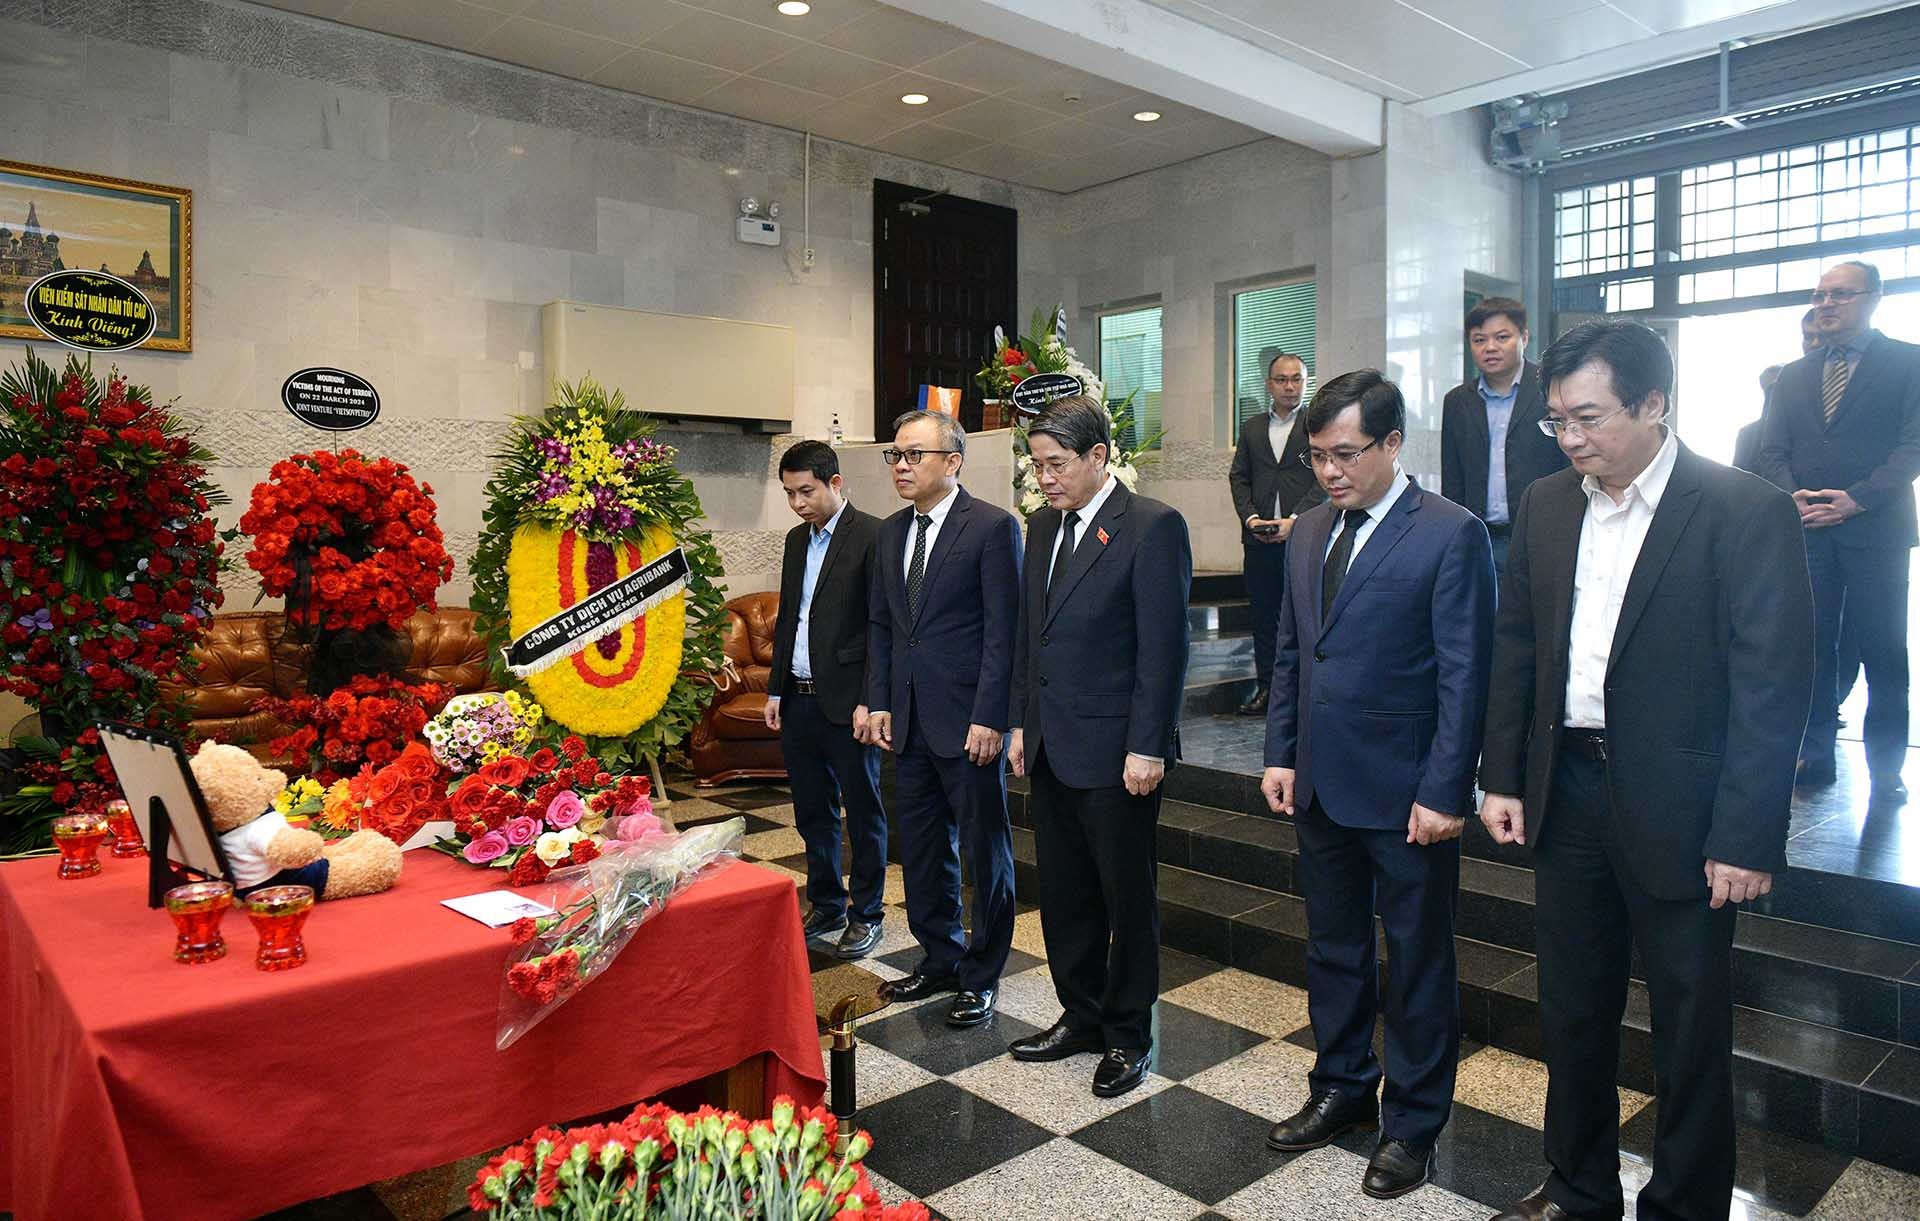 Phó Chủ tịch Quốc hội Nguyễn Đức Hải cùng các đại biểu tưởng niệm các nạn nhân thiệt mạng trong vụ khủng bố tại Liên bang Nga. (Nguồn: Cổng Thông tin điện tử Quốc hội)